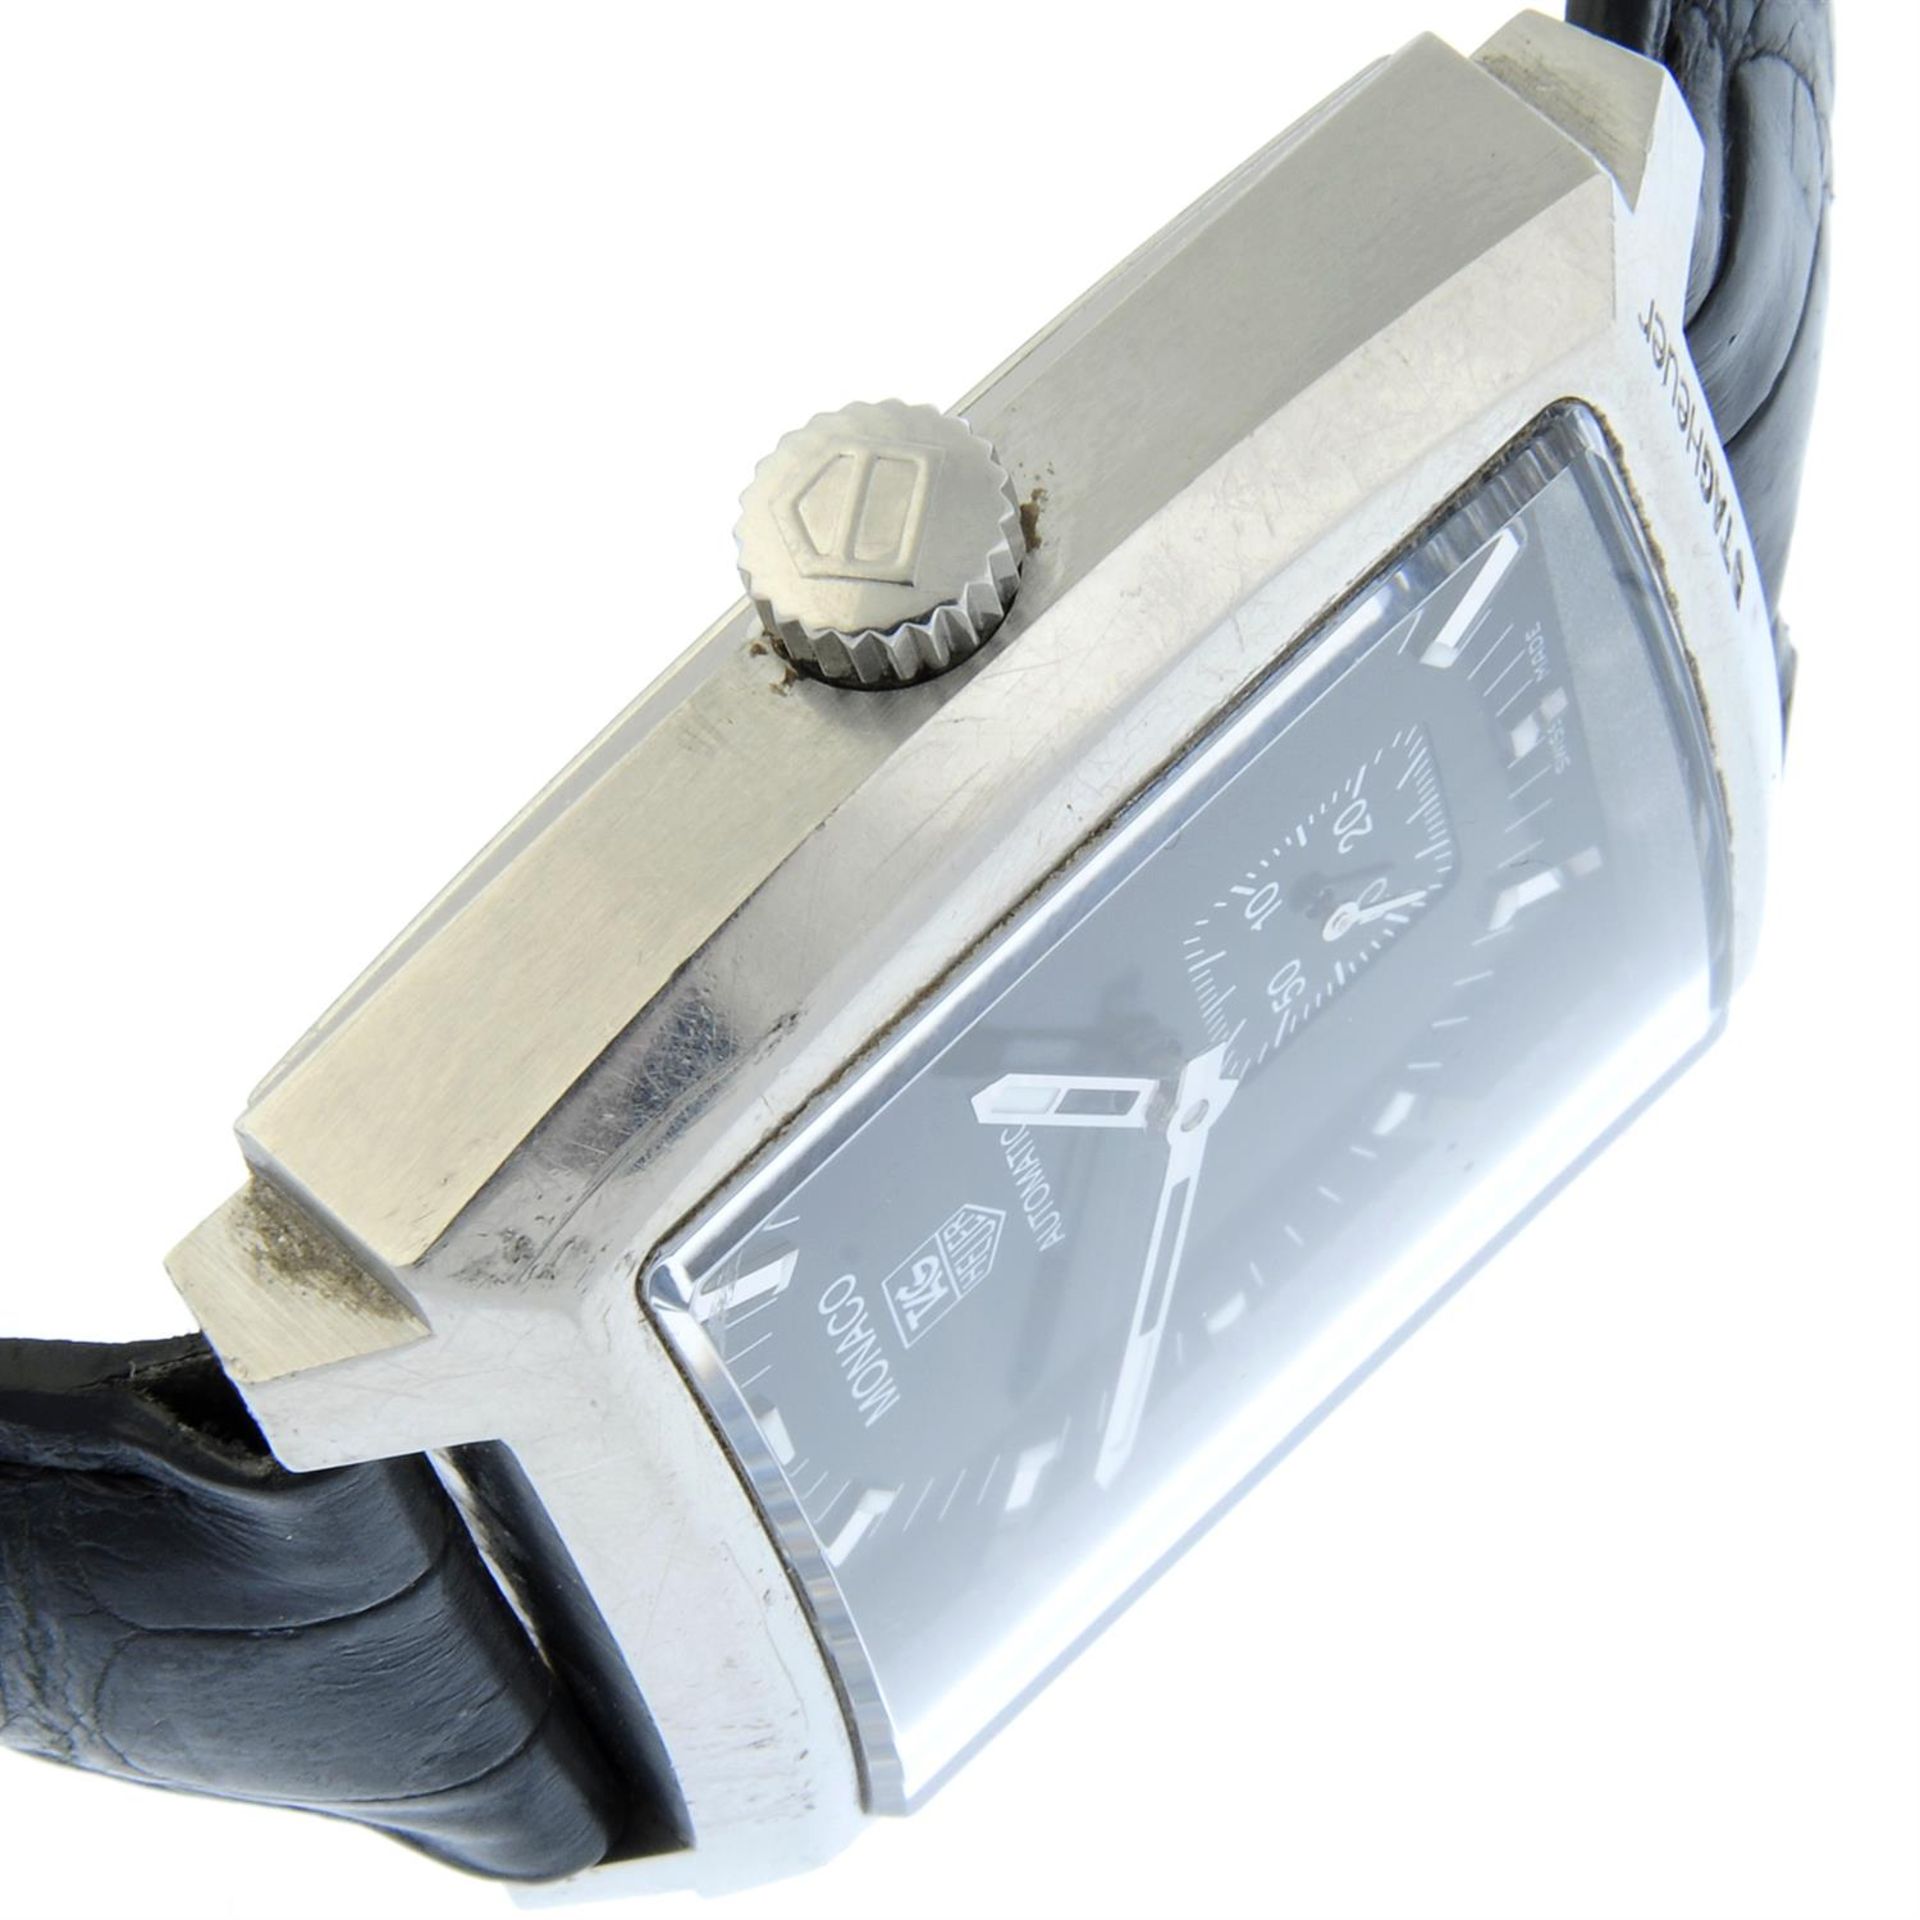 TAG Heuer - a Monaco watch, 36mm. - Bild 3 aus 4